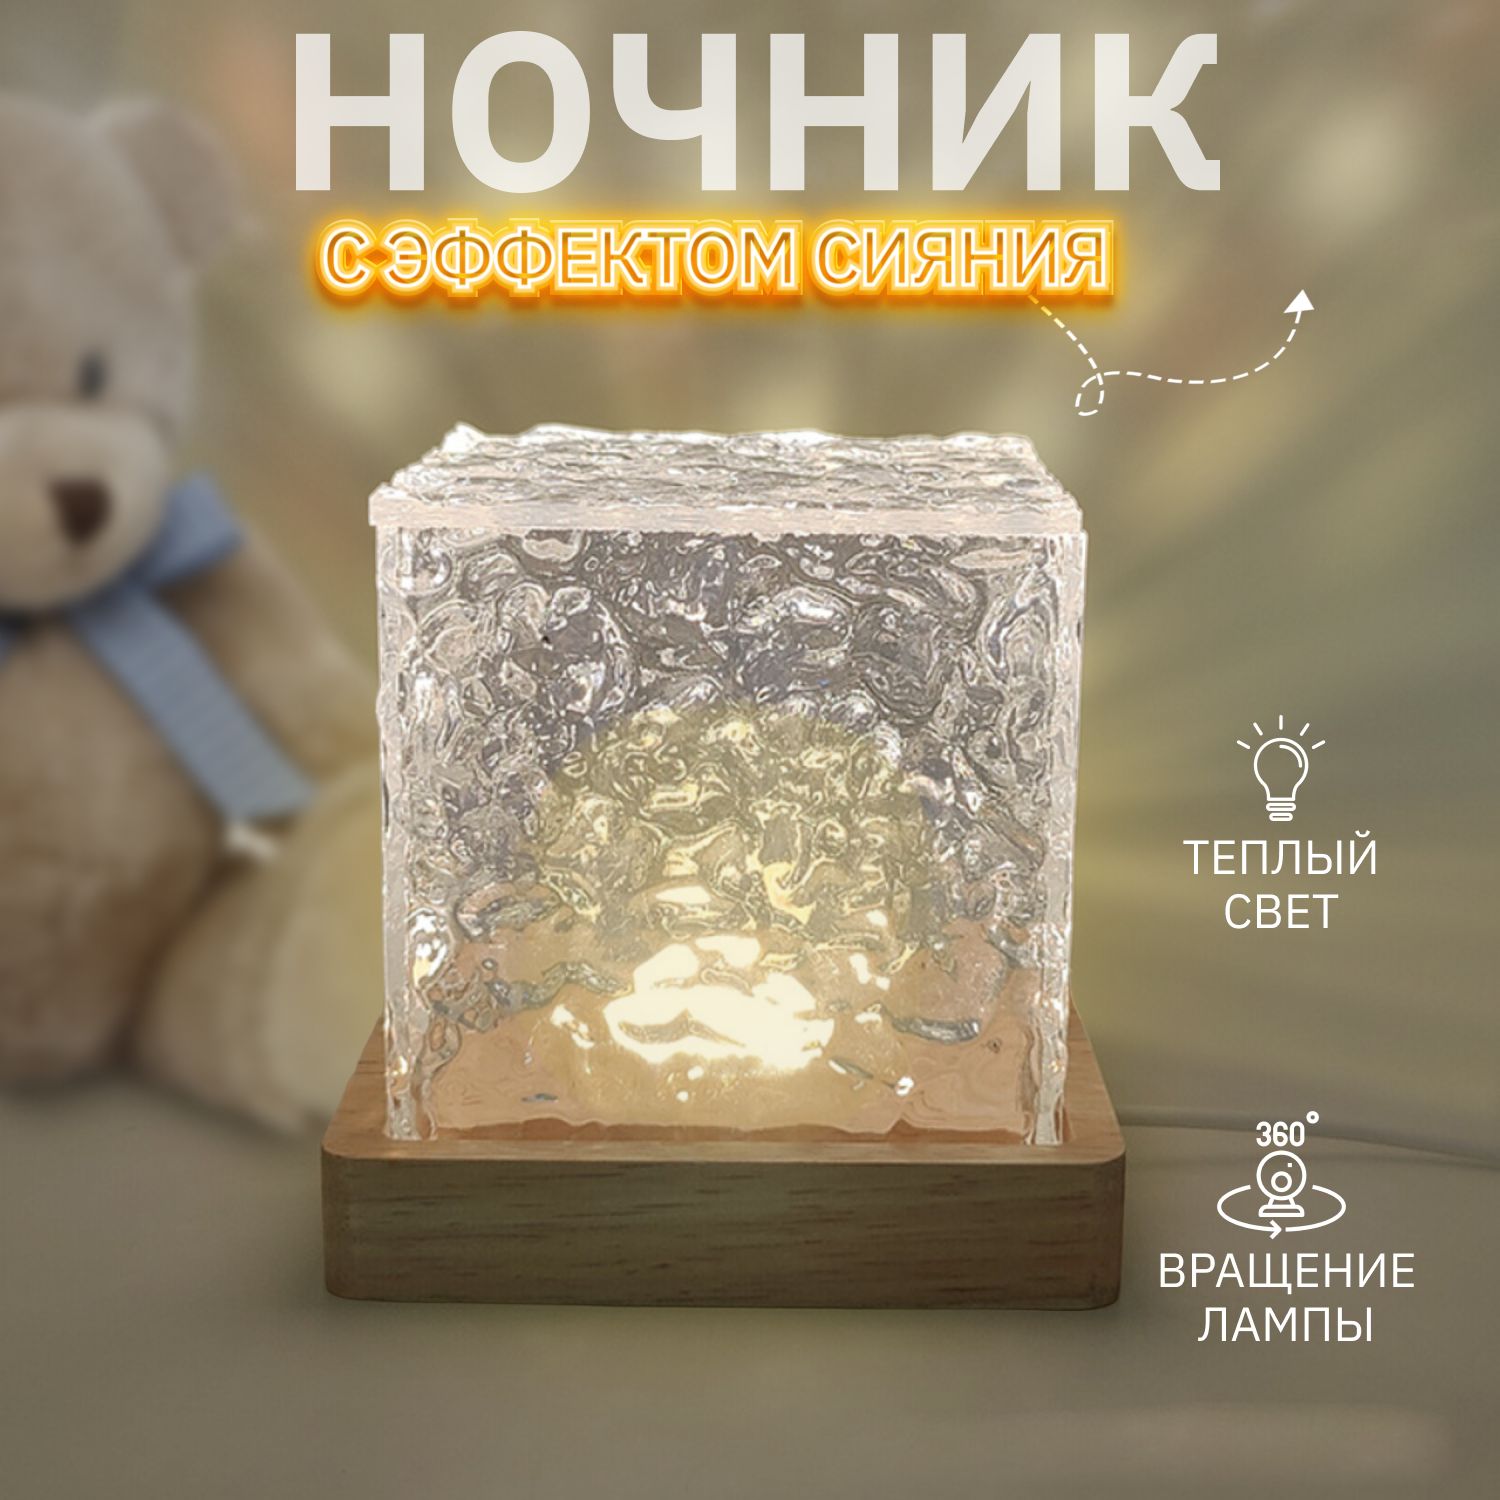 Купить прикроватные светильники для спальни в Минске, лампы в спальню